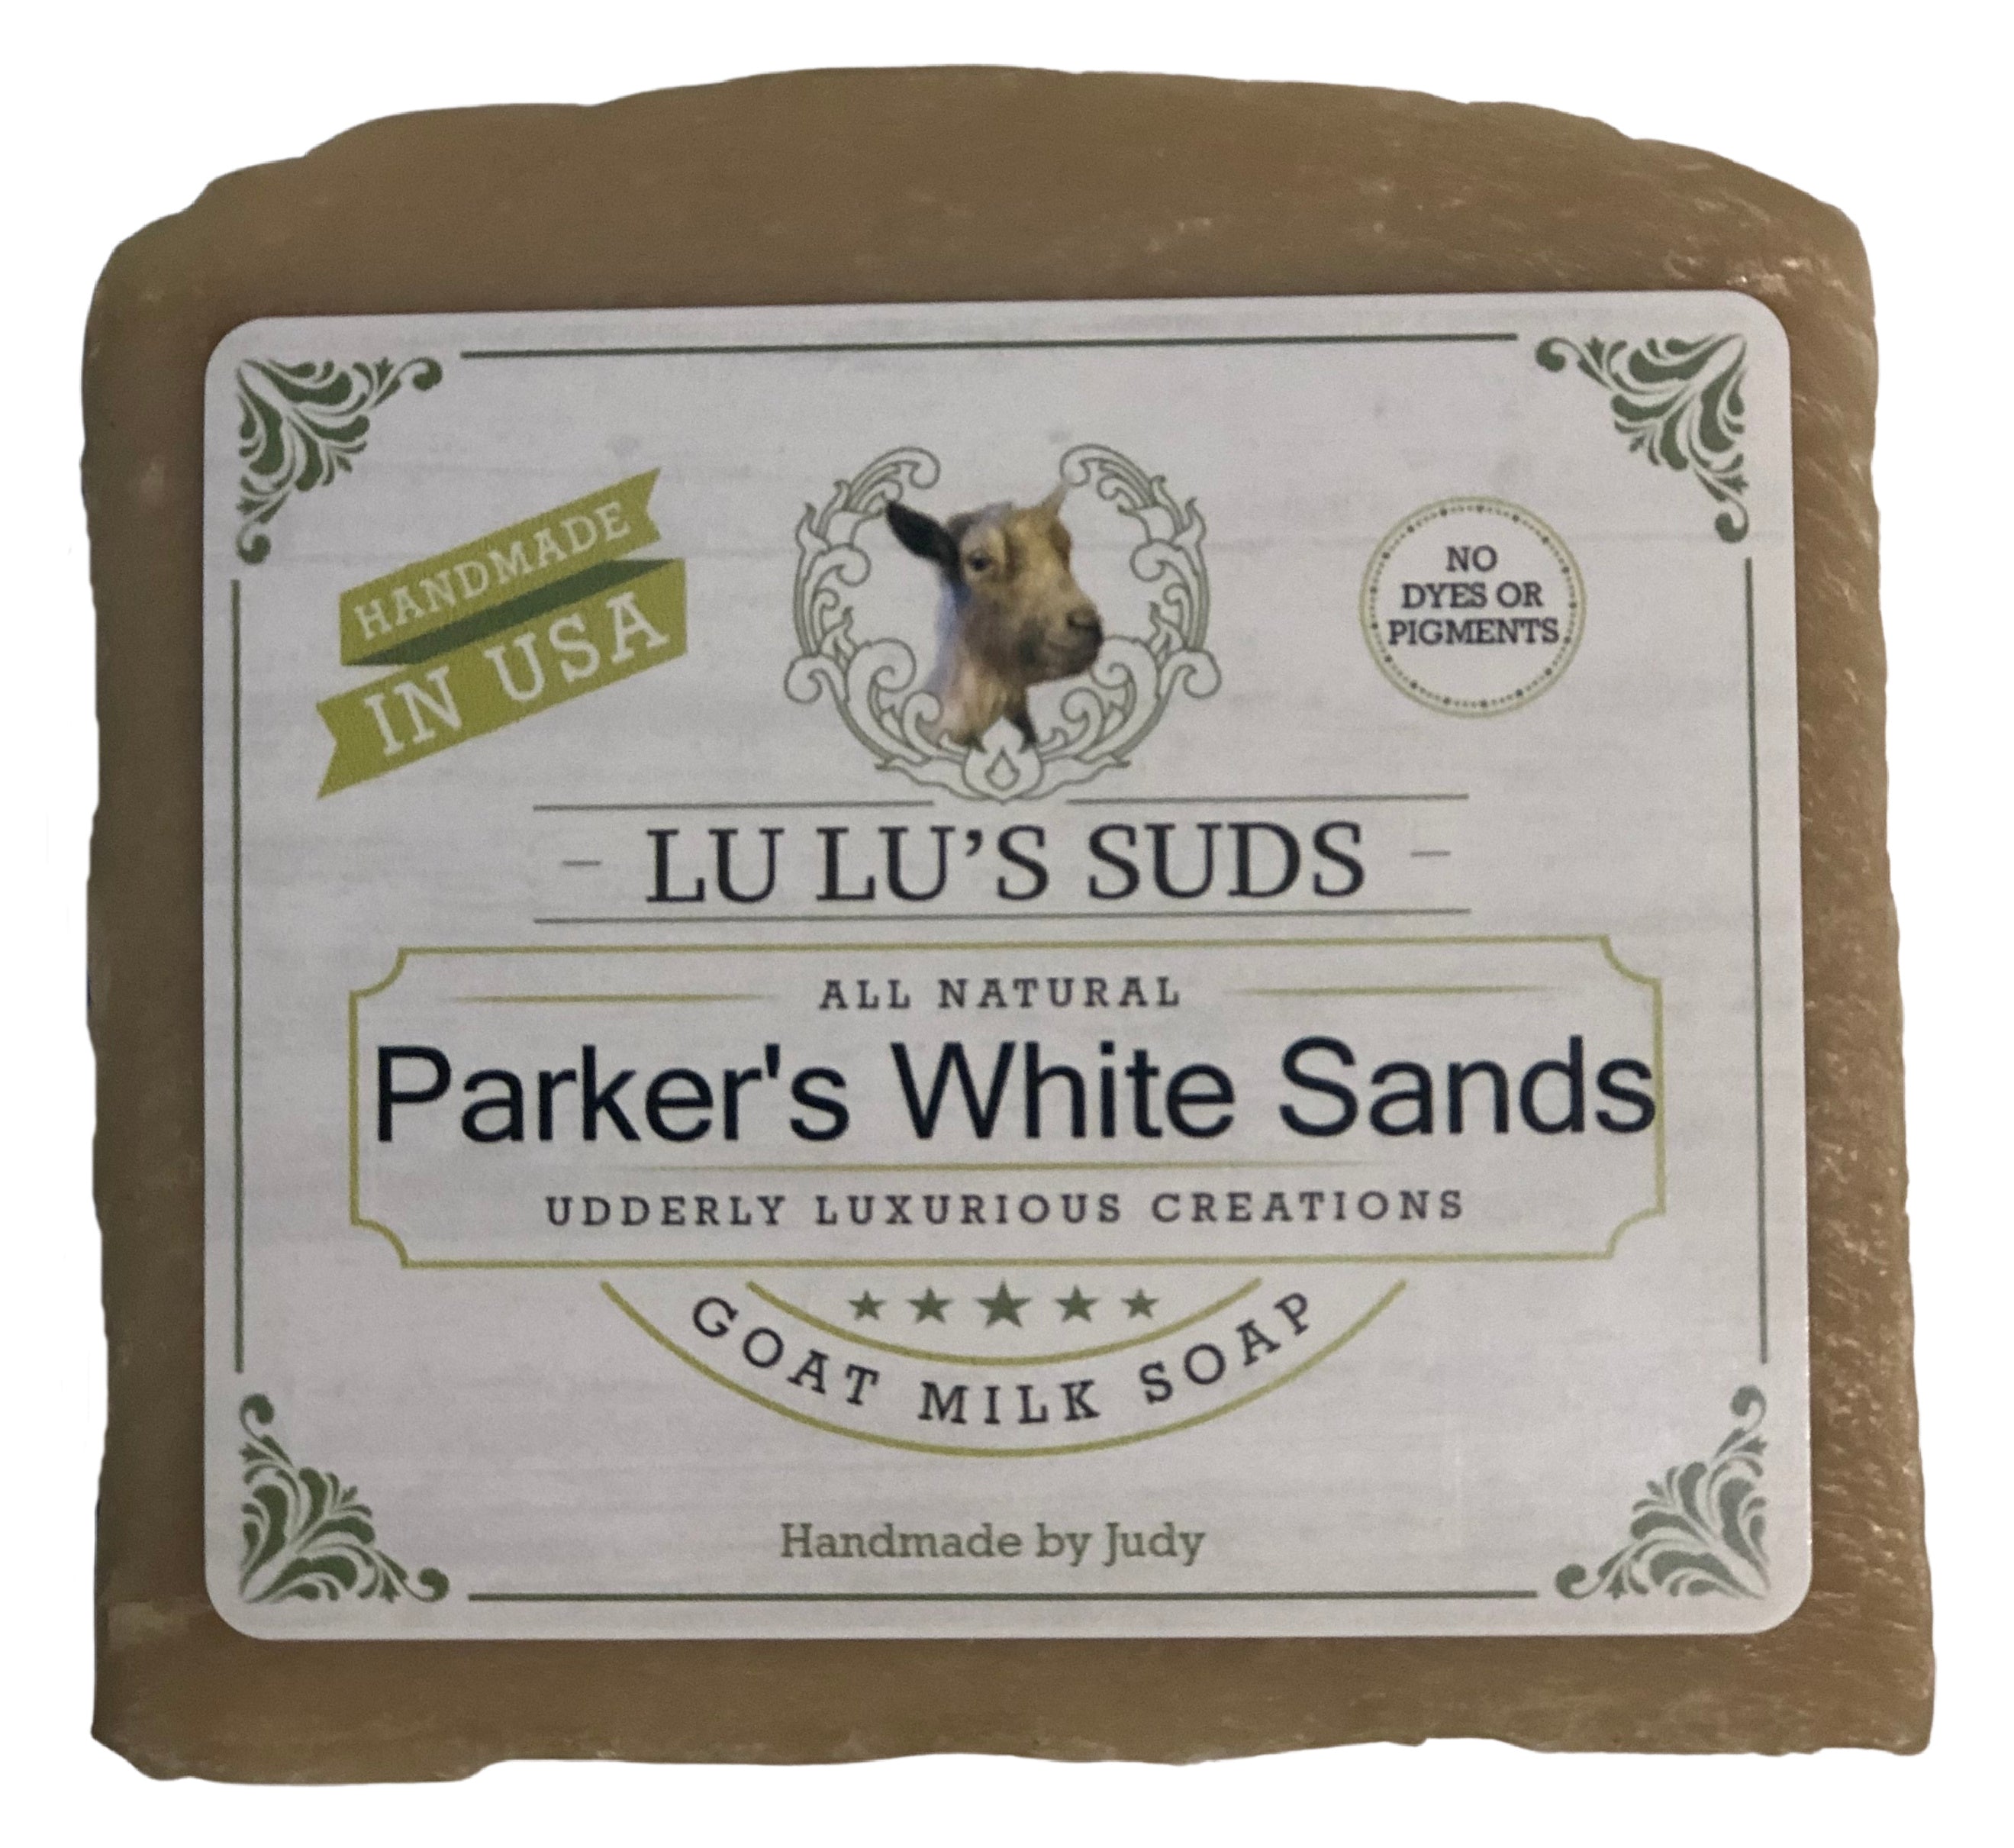 Parker's White Sands Goat Milk Soap 5 oz.